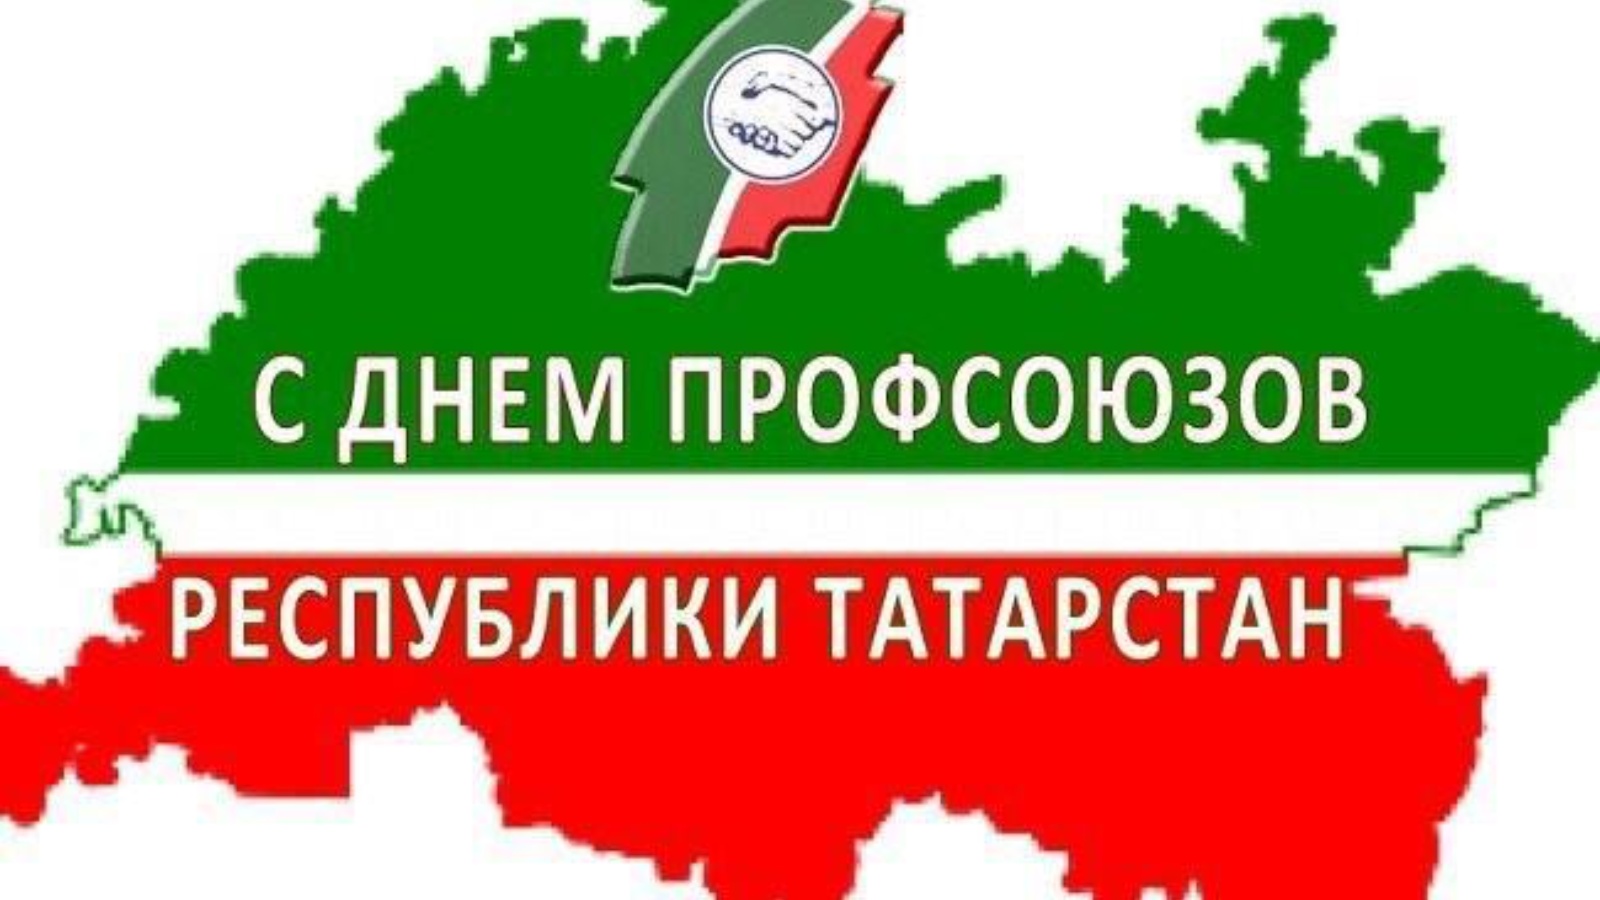 Профсоюзы Татарстана логотип